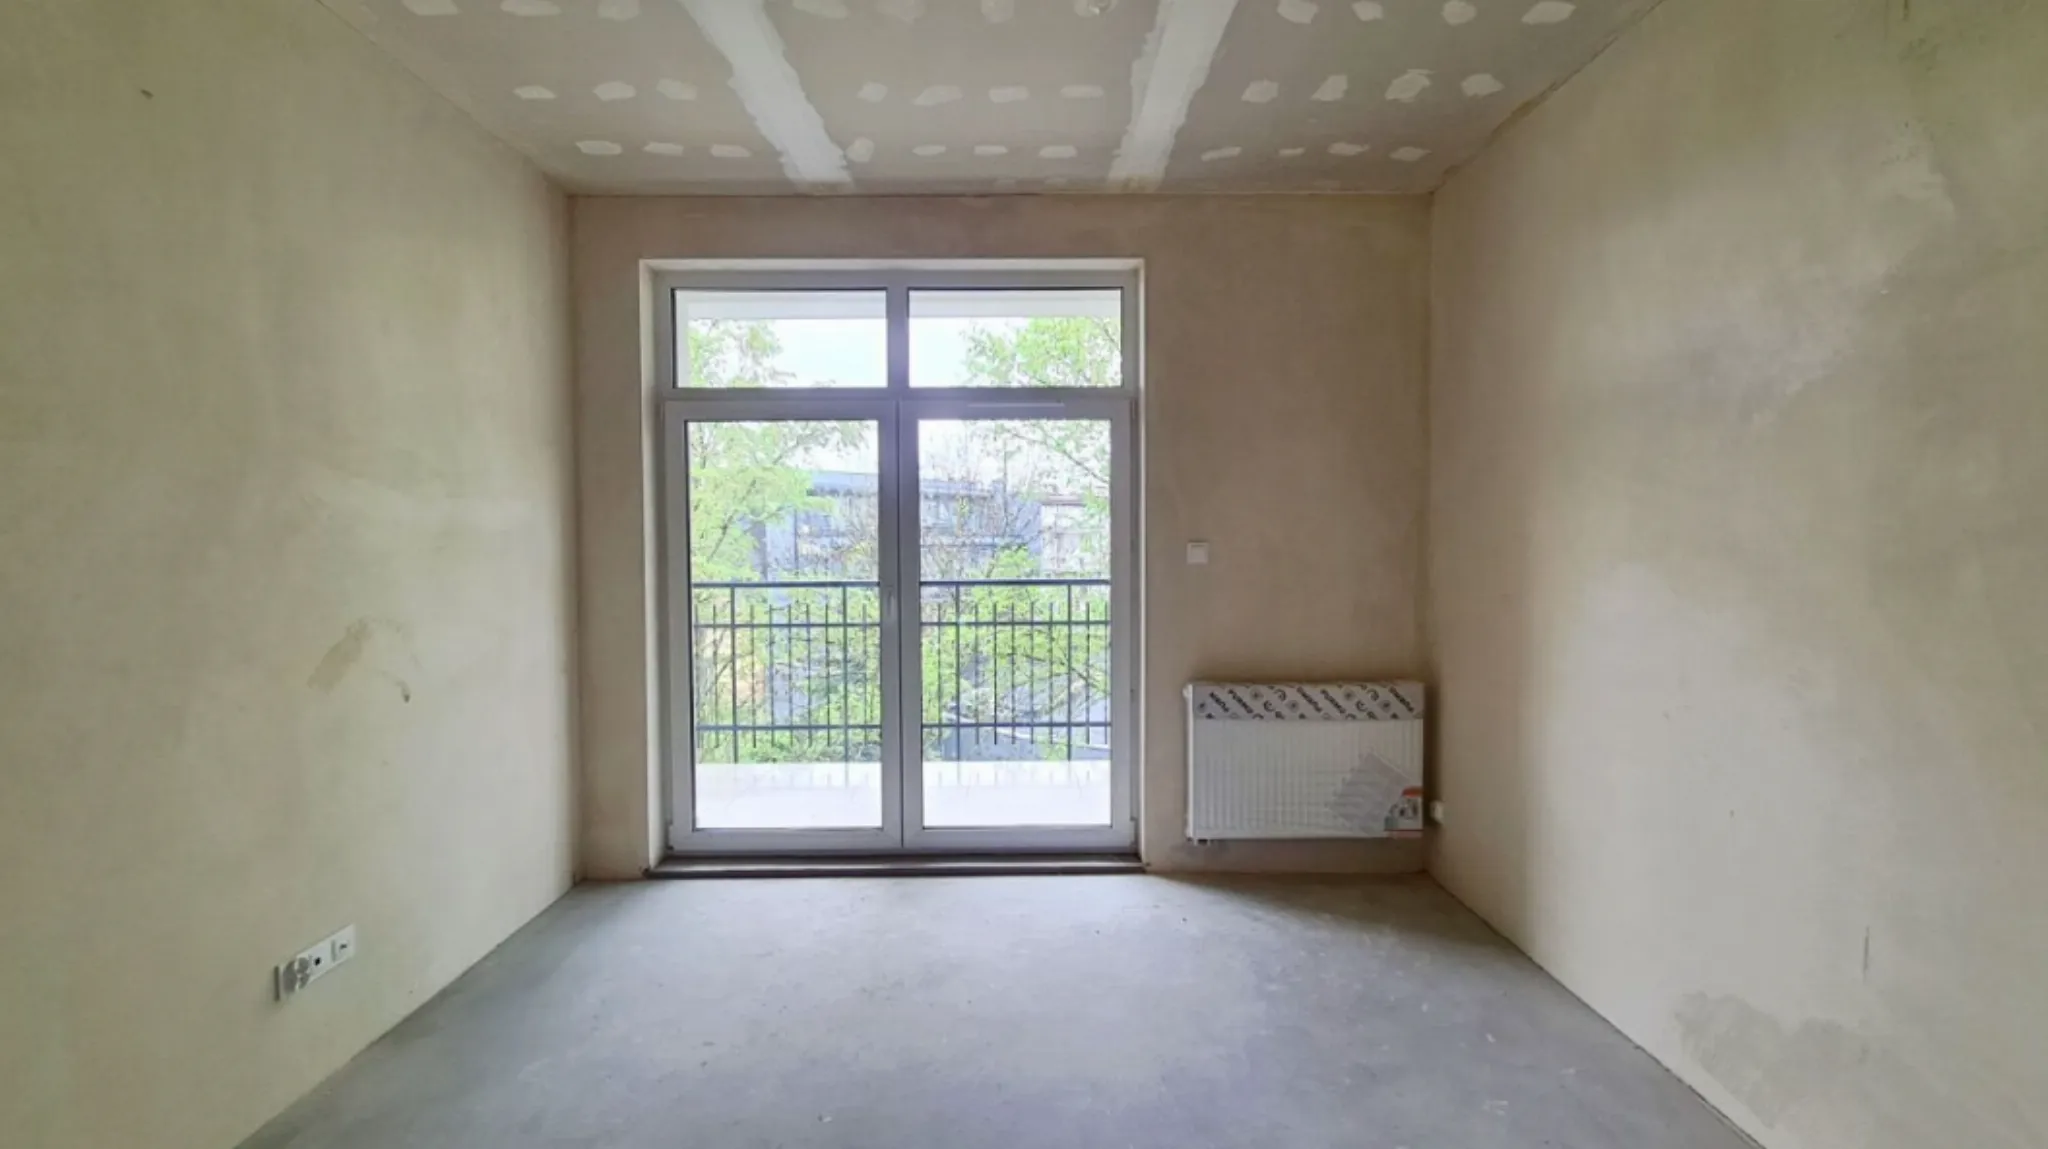 Krowodrza mieszkanie w stanie deweloperskim sprzedam - Mieszkanie na sprzedaż Kraków